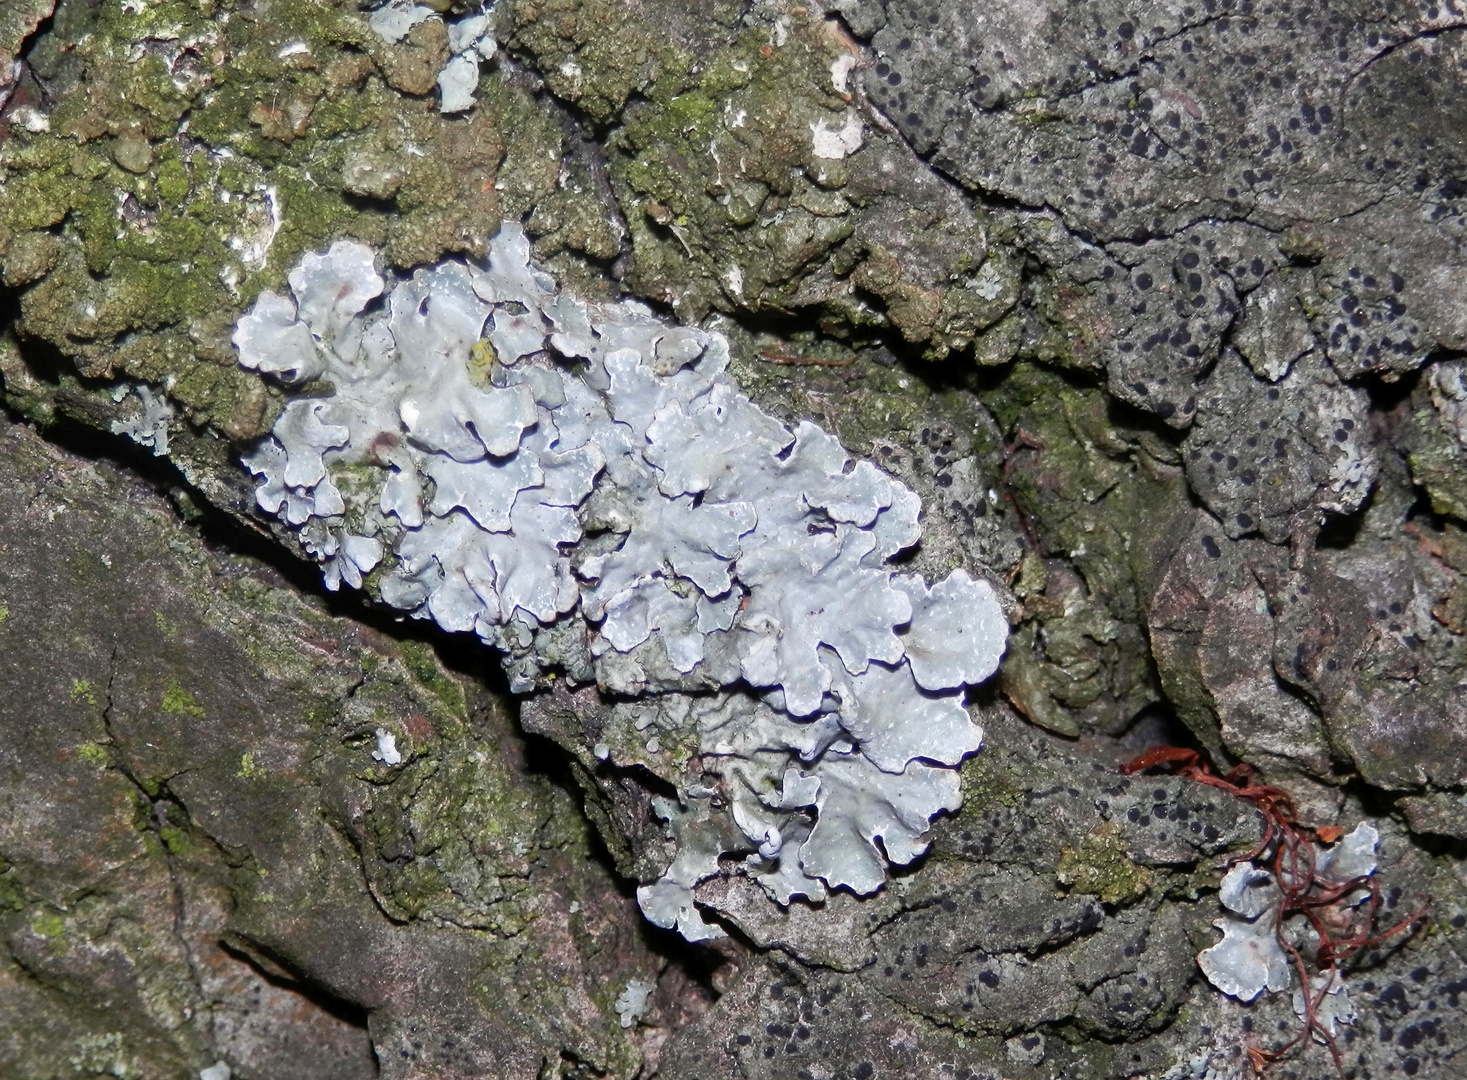 Sulkatflechte (Parmelia sulcata) auf verwitterndem Basalt